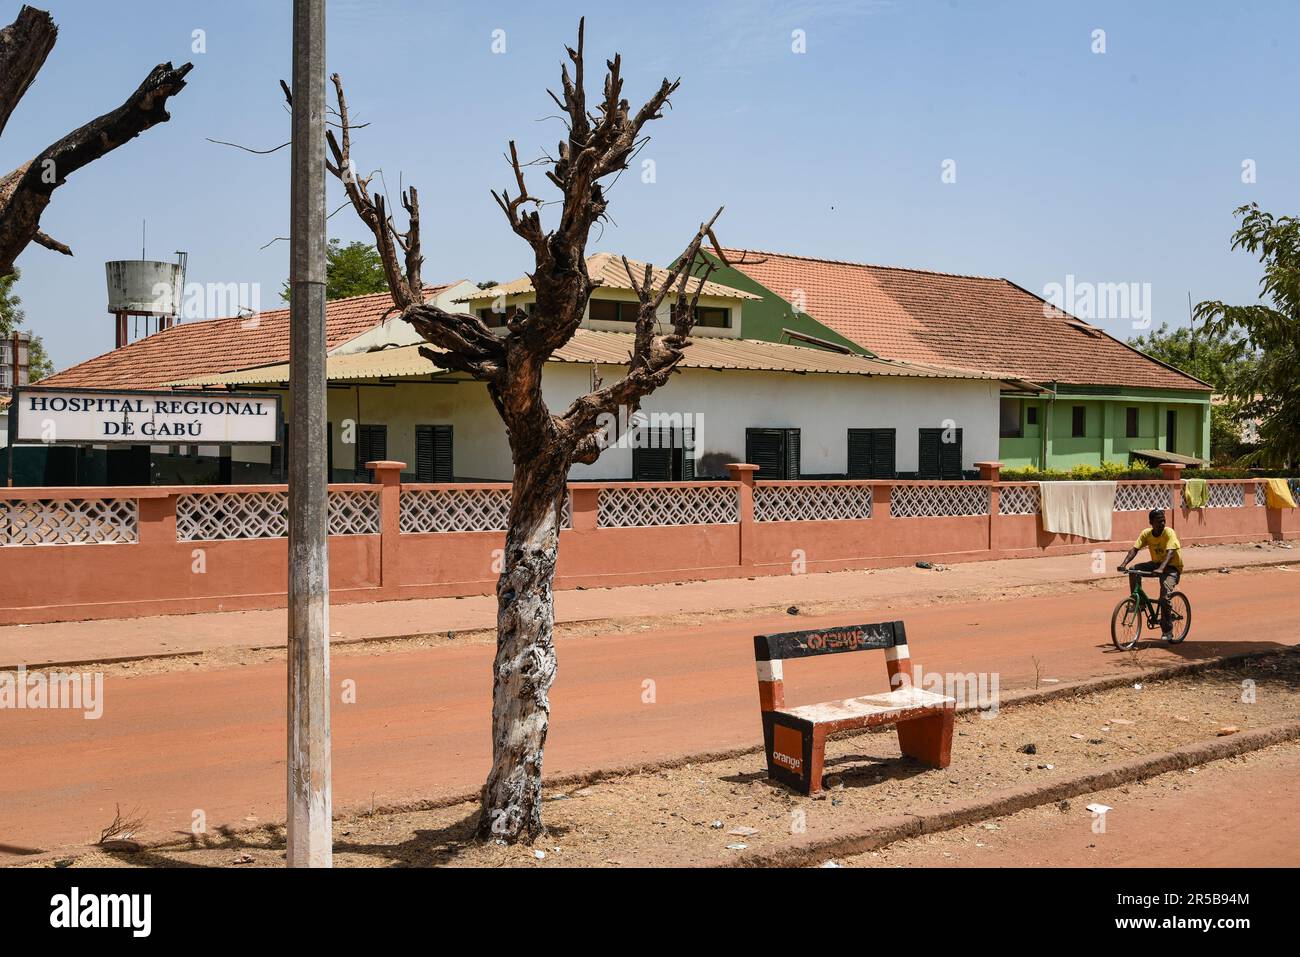 Nicolas Remene / le Pictorium - énergie solaire et développement rural dans la région de Gabu - 16/03/2017 - Guinée-Bissau / Gabu / Gabu - Hôpital régional de Gabu. L'hôpital est équipé d'un S2 pour chaque service, ce qui donne un total de 4 SHS, qui fournissent l'électricité et l'éclairage pour les salles de consultation et les salles adjacentes, ainsi que les zones communes telles que les couloirs. *Système solaire de maison (SHS) : système d'énergie solaire de maison Banque D'Images